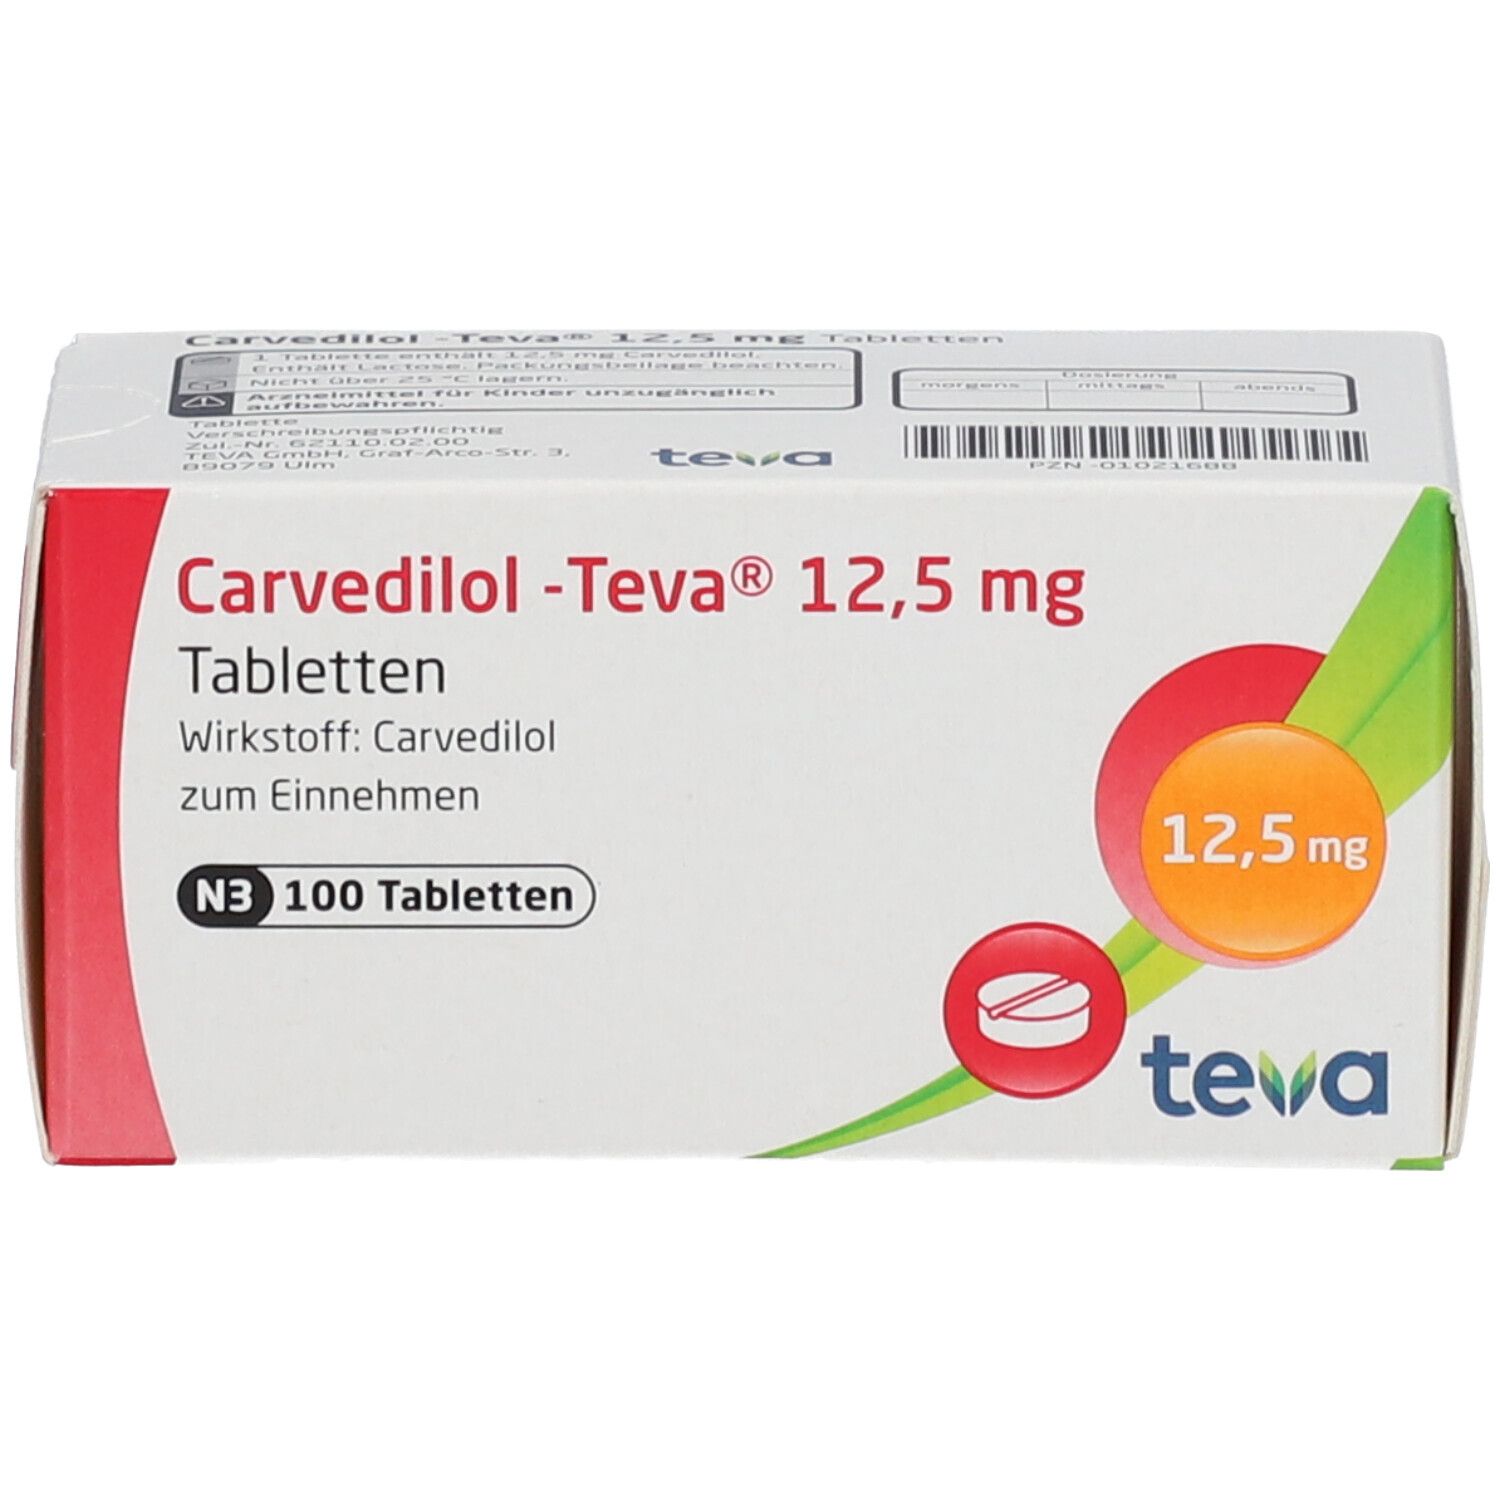 Carvedilol-Teva® 12,5 mg